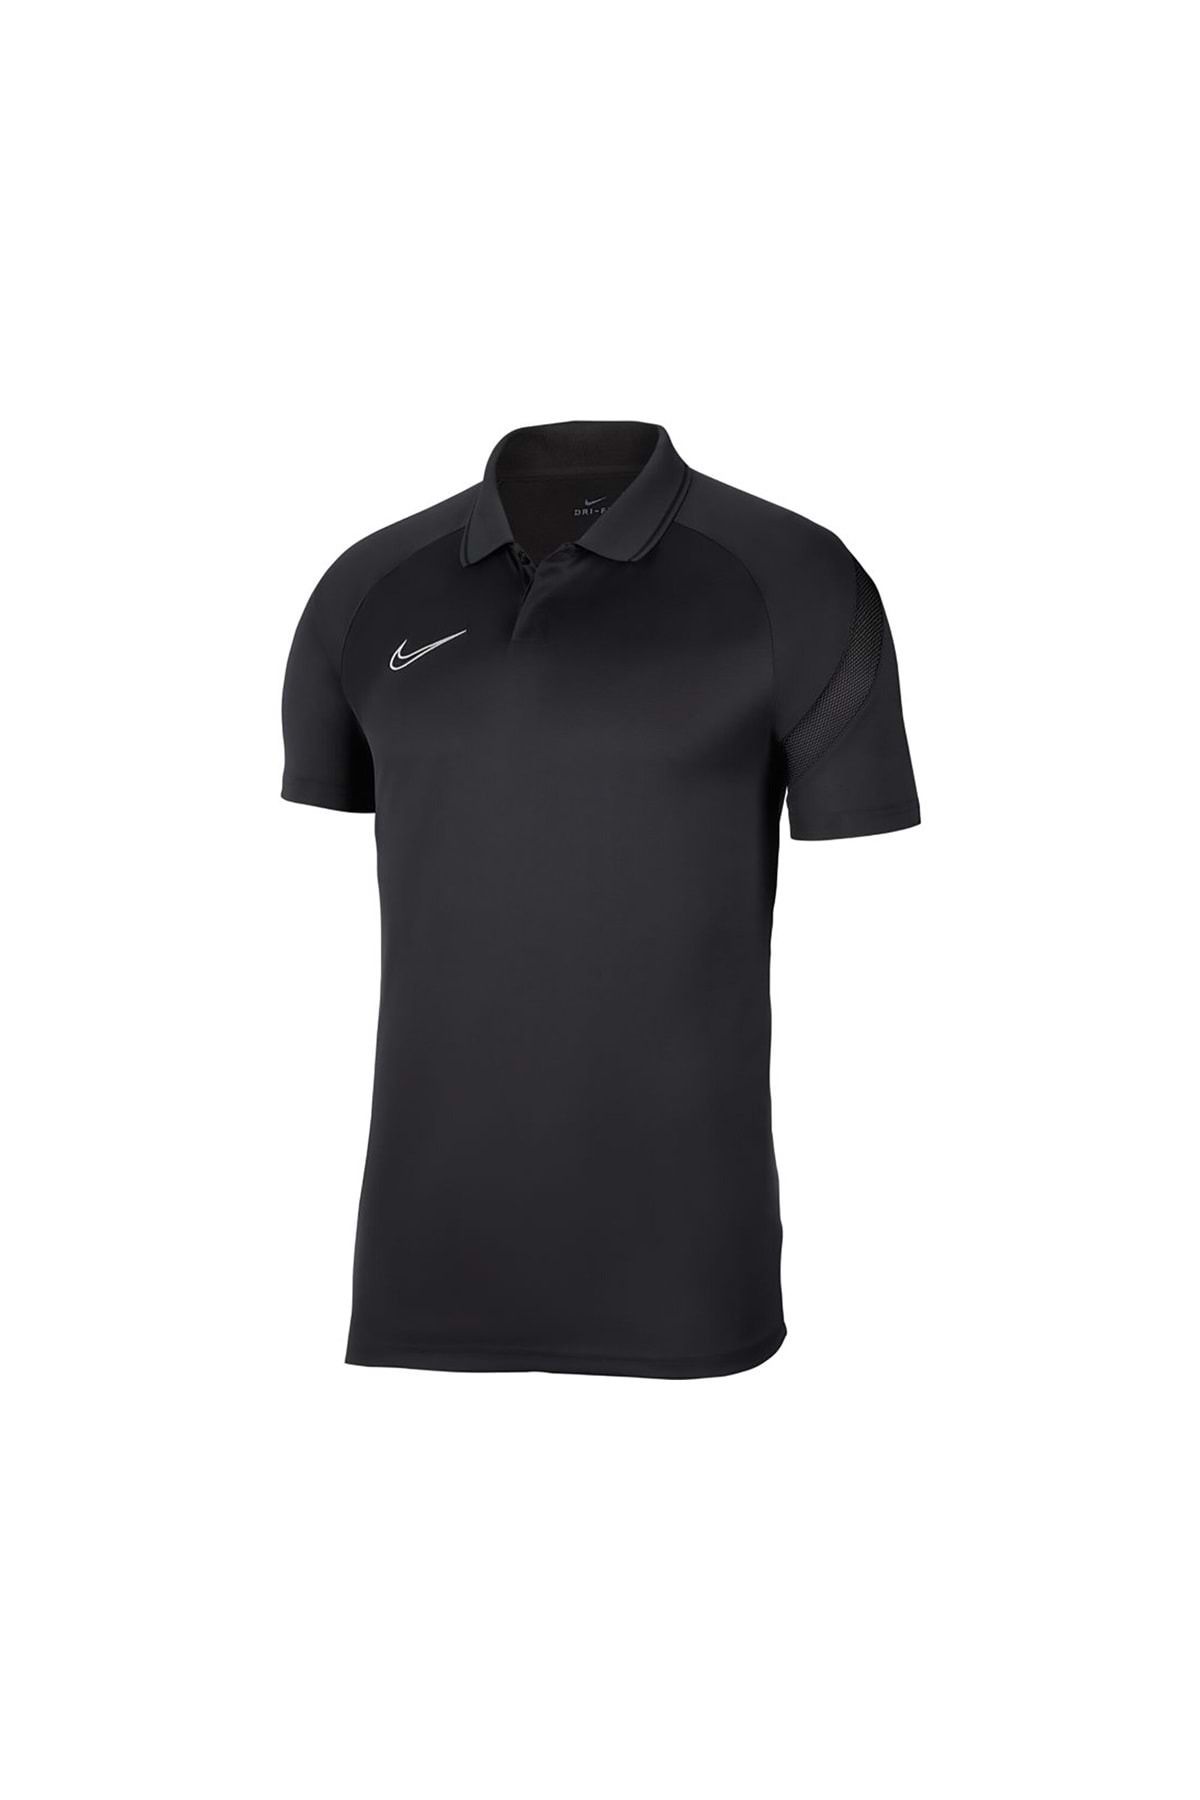 Nike Bv6922- M Nk Dry Acdpr T-shirt Polo Yaka Erkek Tişört Siyah